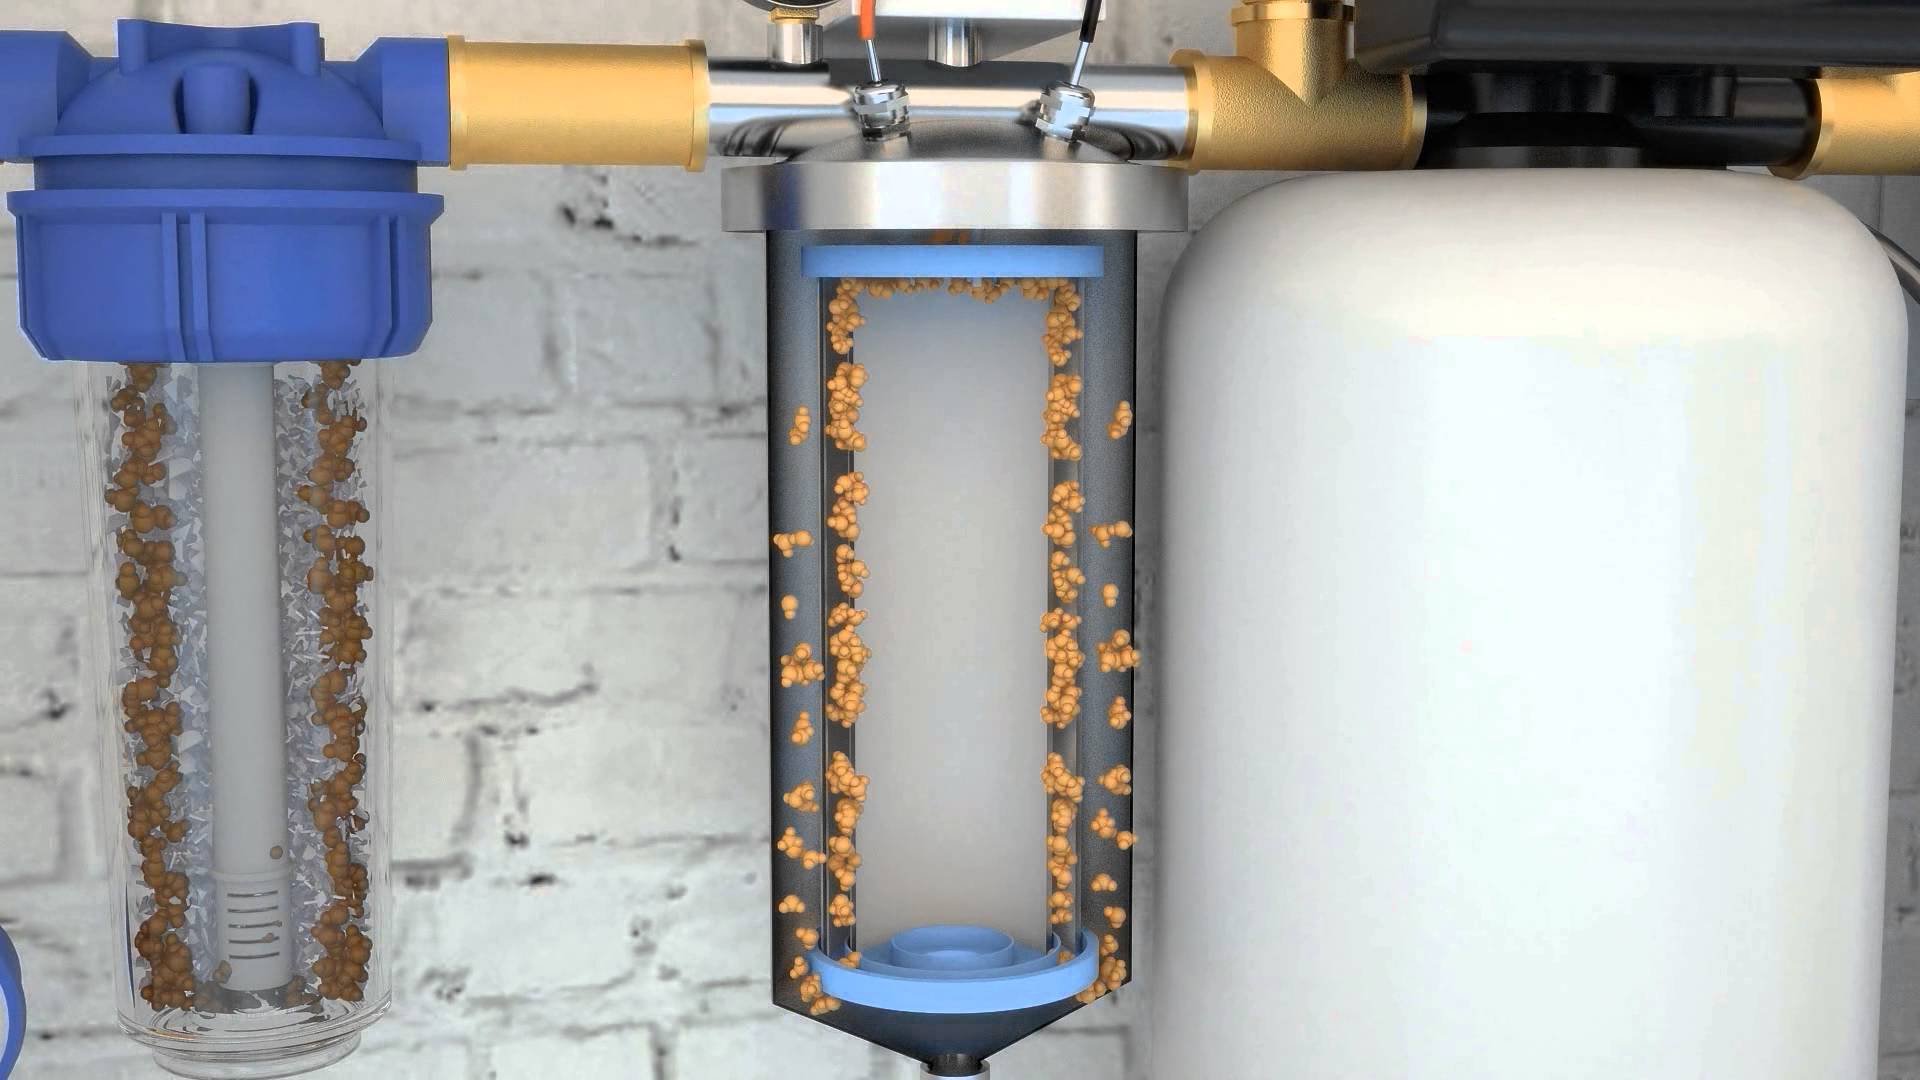 Фильтры воды металла. Фильтр МХС-300 очистки воды. Фильтр тонкой очистки 10 мкм для воды из скважины. Фильтр обезжелезиватель для воды из скважины. Система электрохимического обезжелезивания воды.